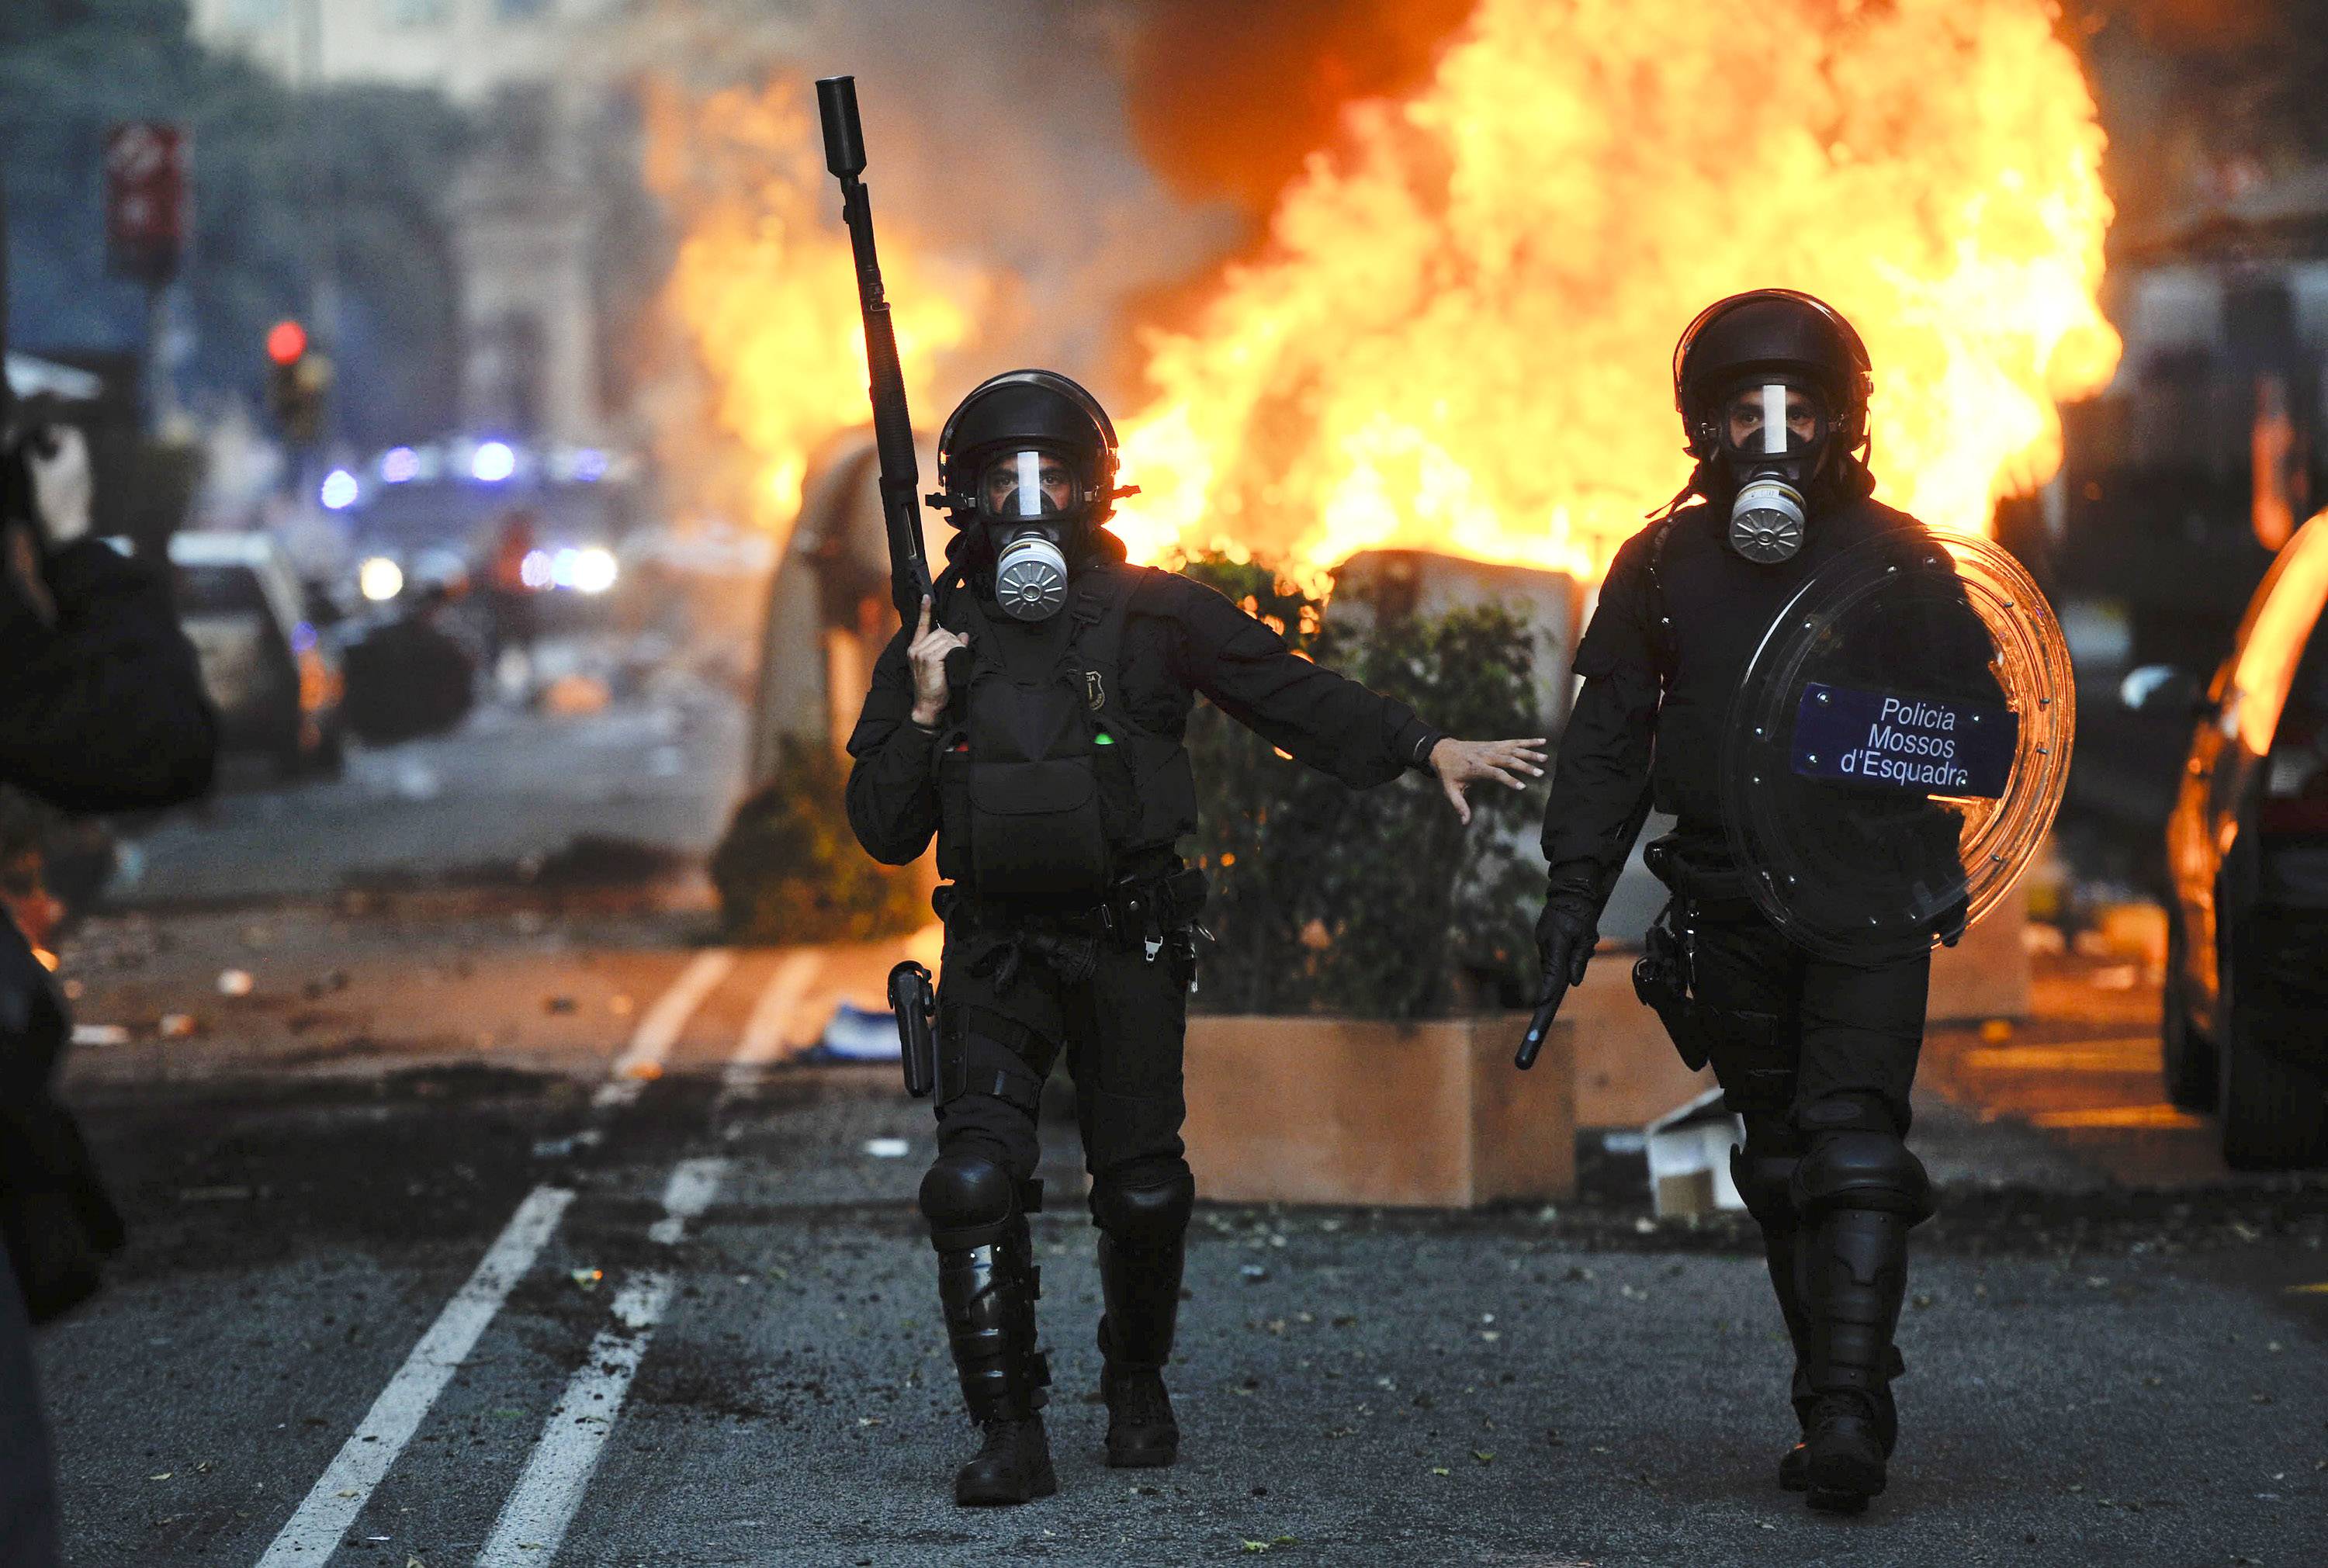 Riot Photos - Riot Police